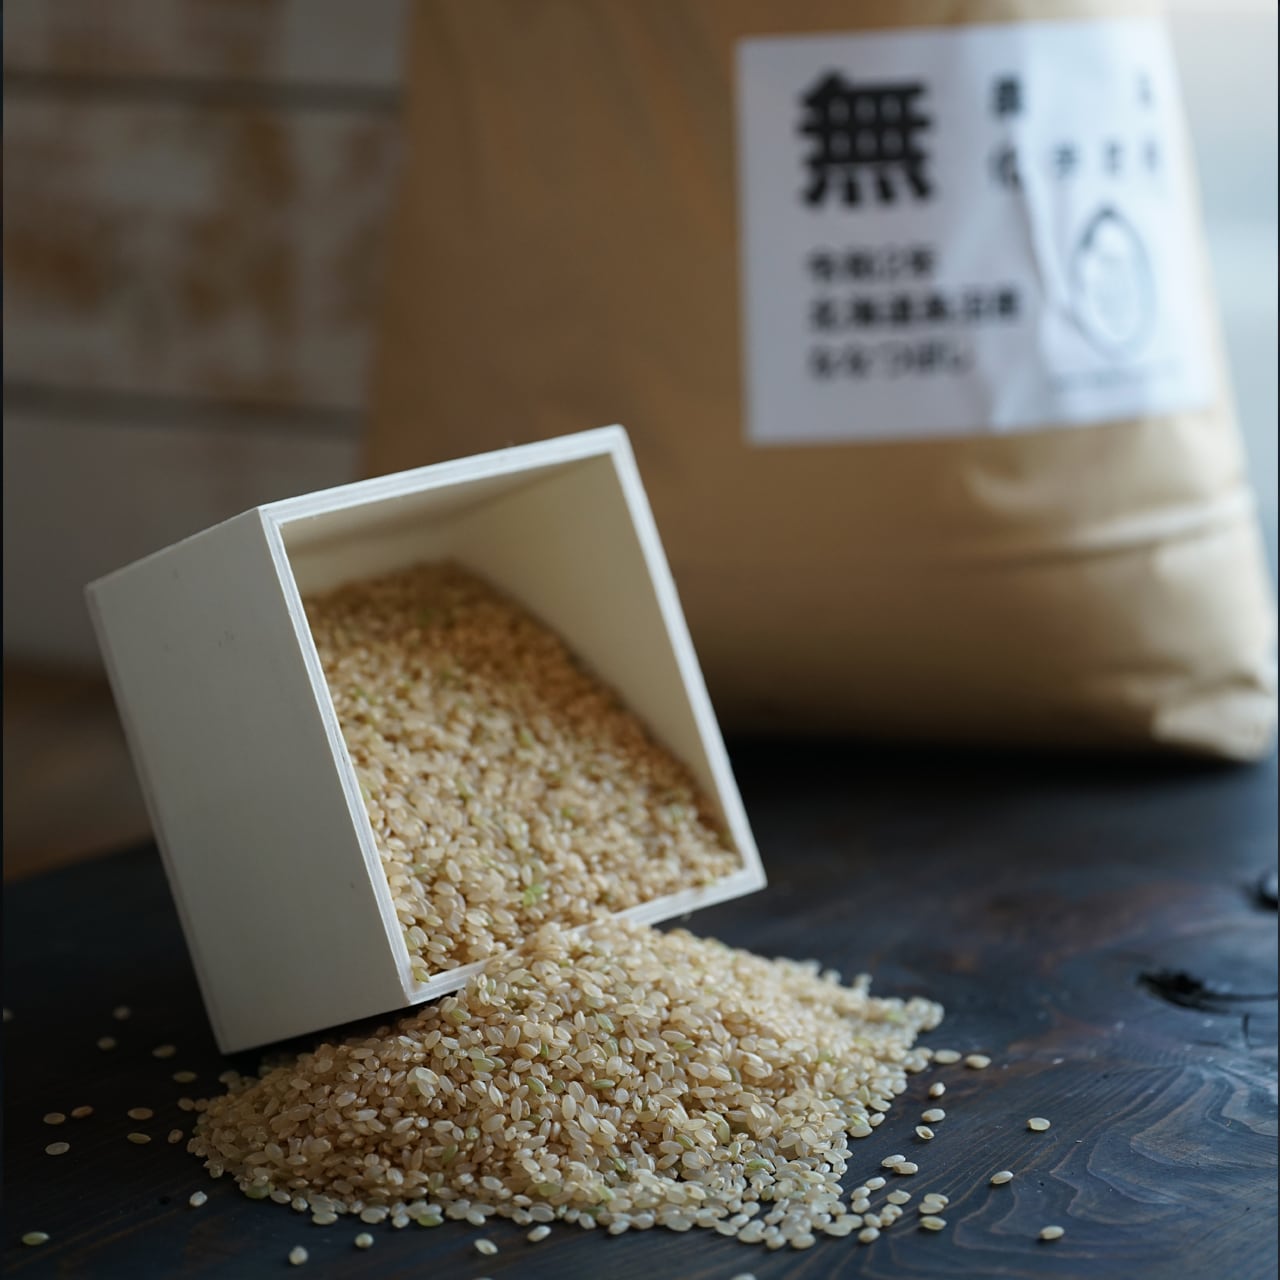 健康第一⭐完全無農薬 ななつぼし玄米10㌔